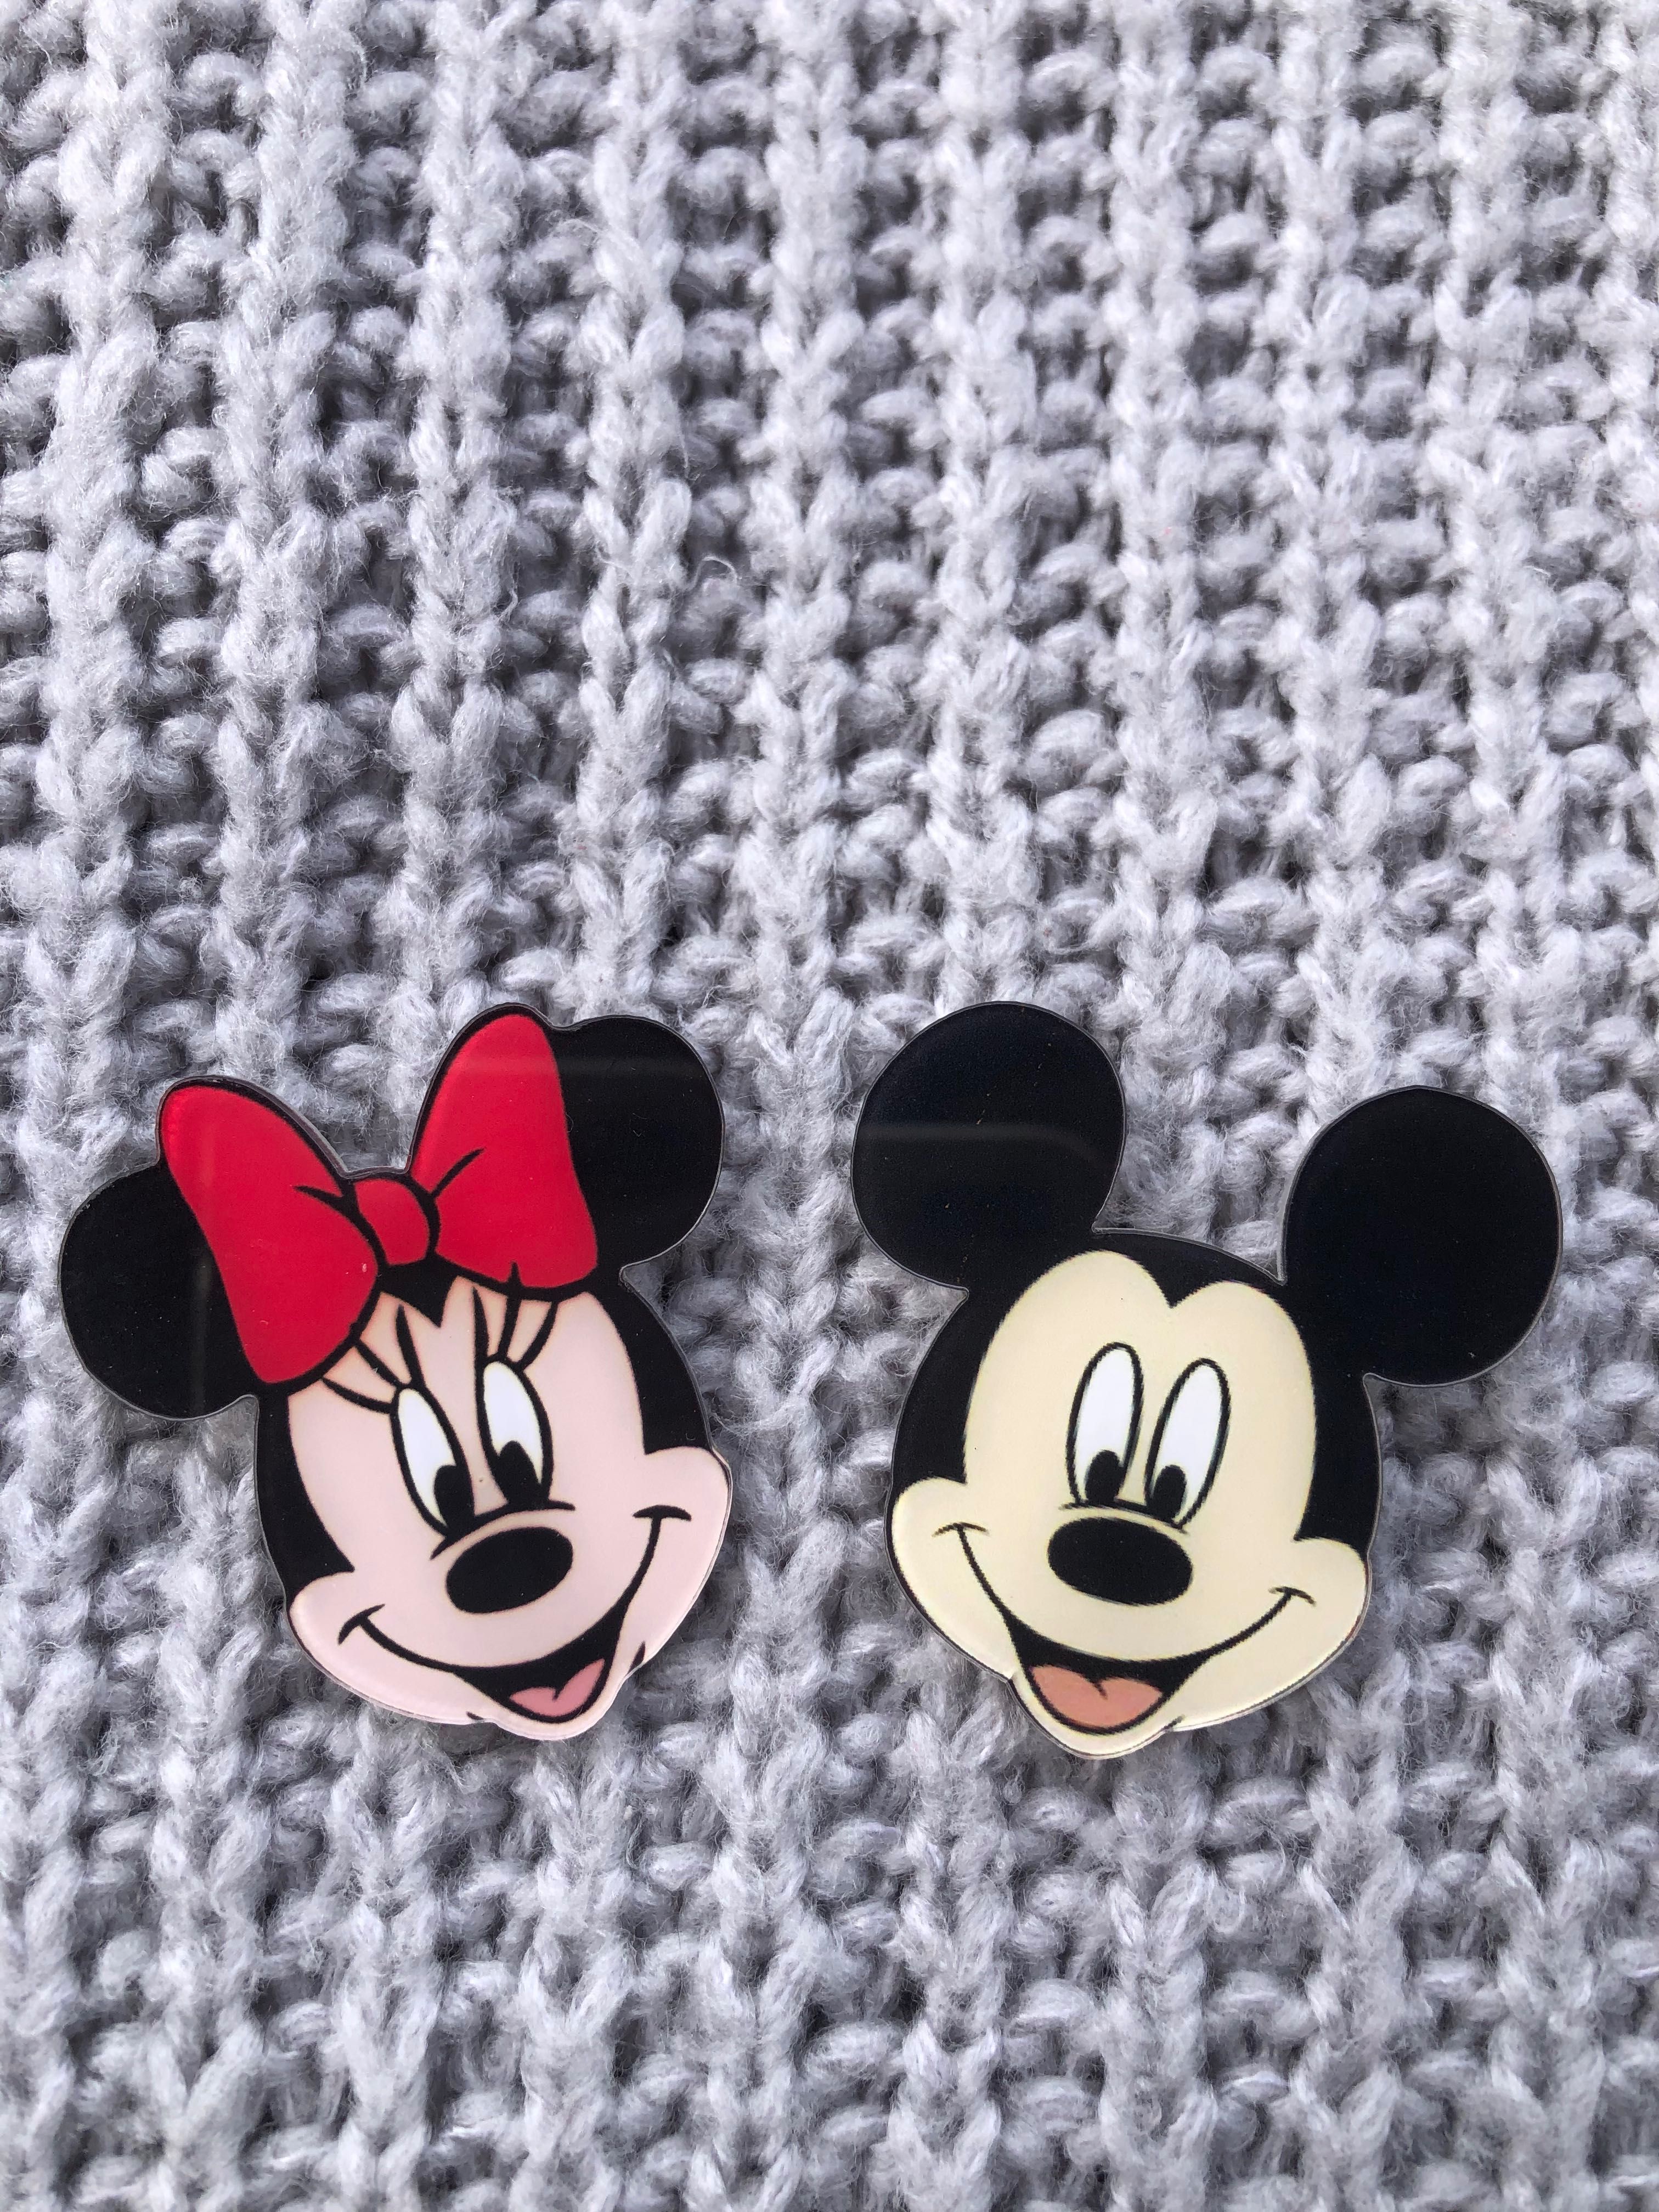 Broszka z kolekcji Mickey z postaciami Disneya Myszką Miki i Minnie